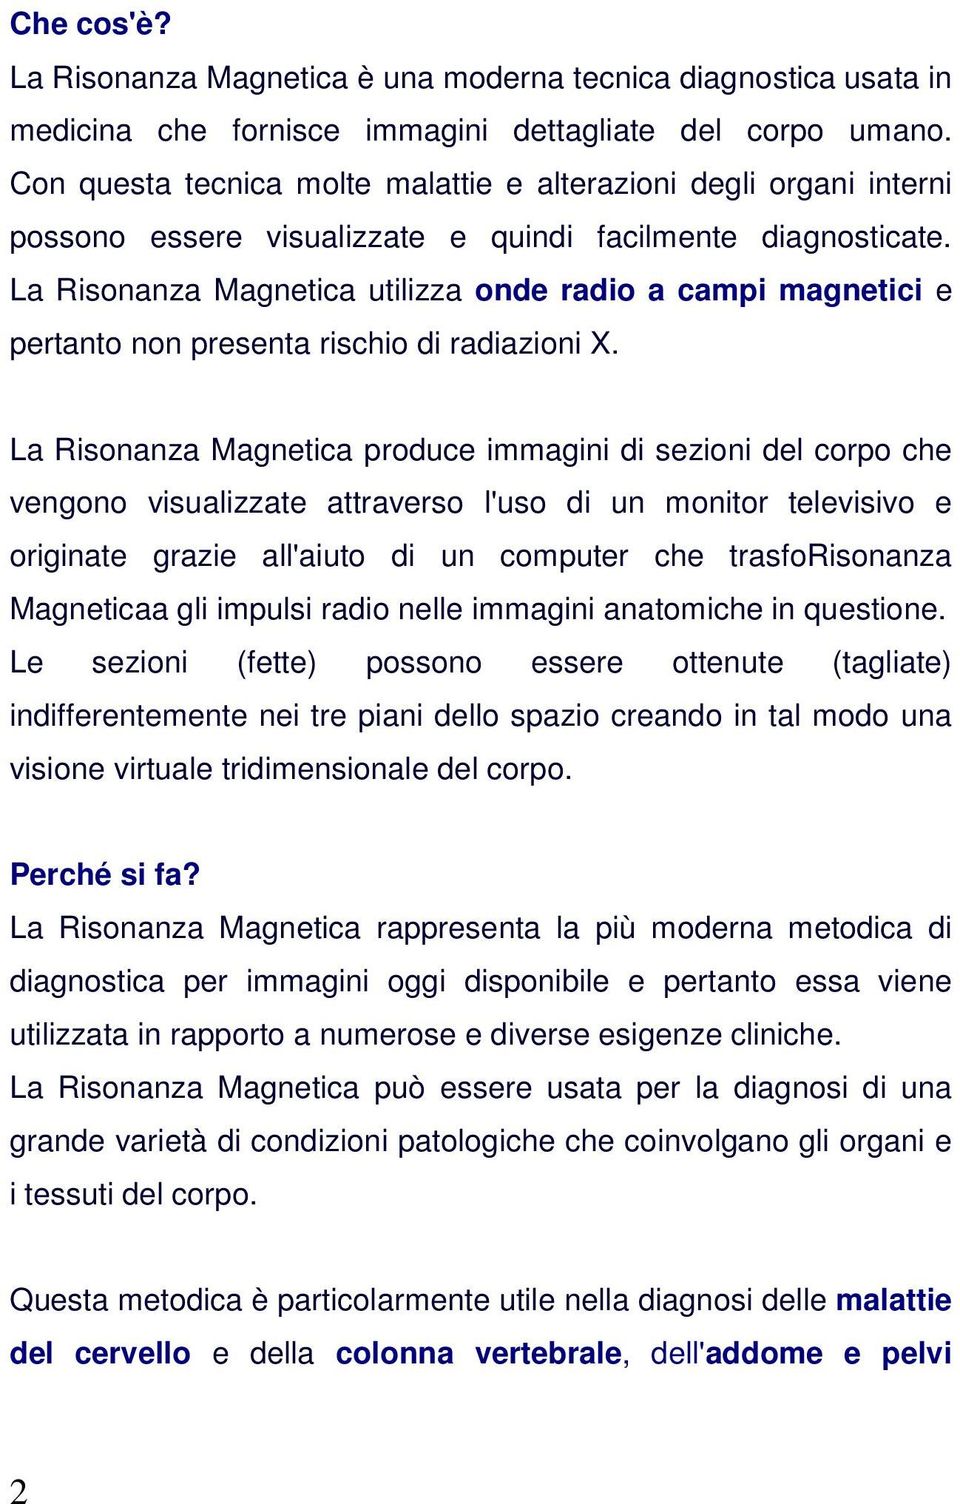 La Risonanza Magnetica utilizza onde radio a campi magnetici e pertanto non presenta rischio di radiazioni X.